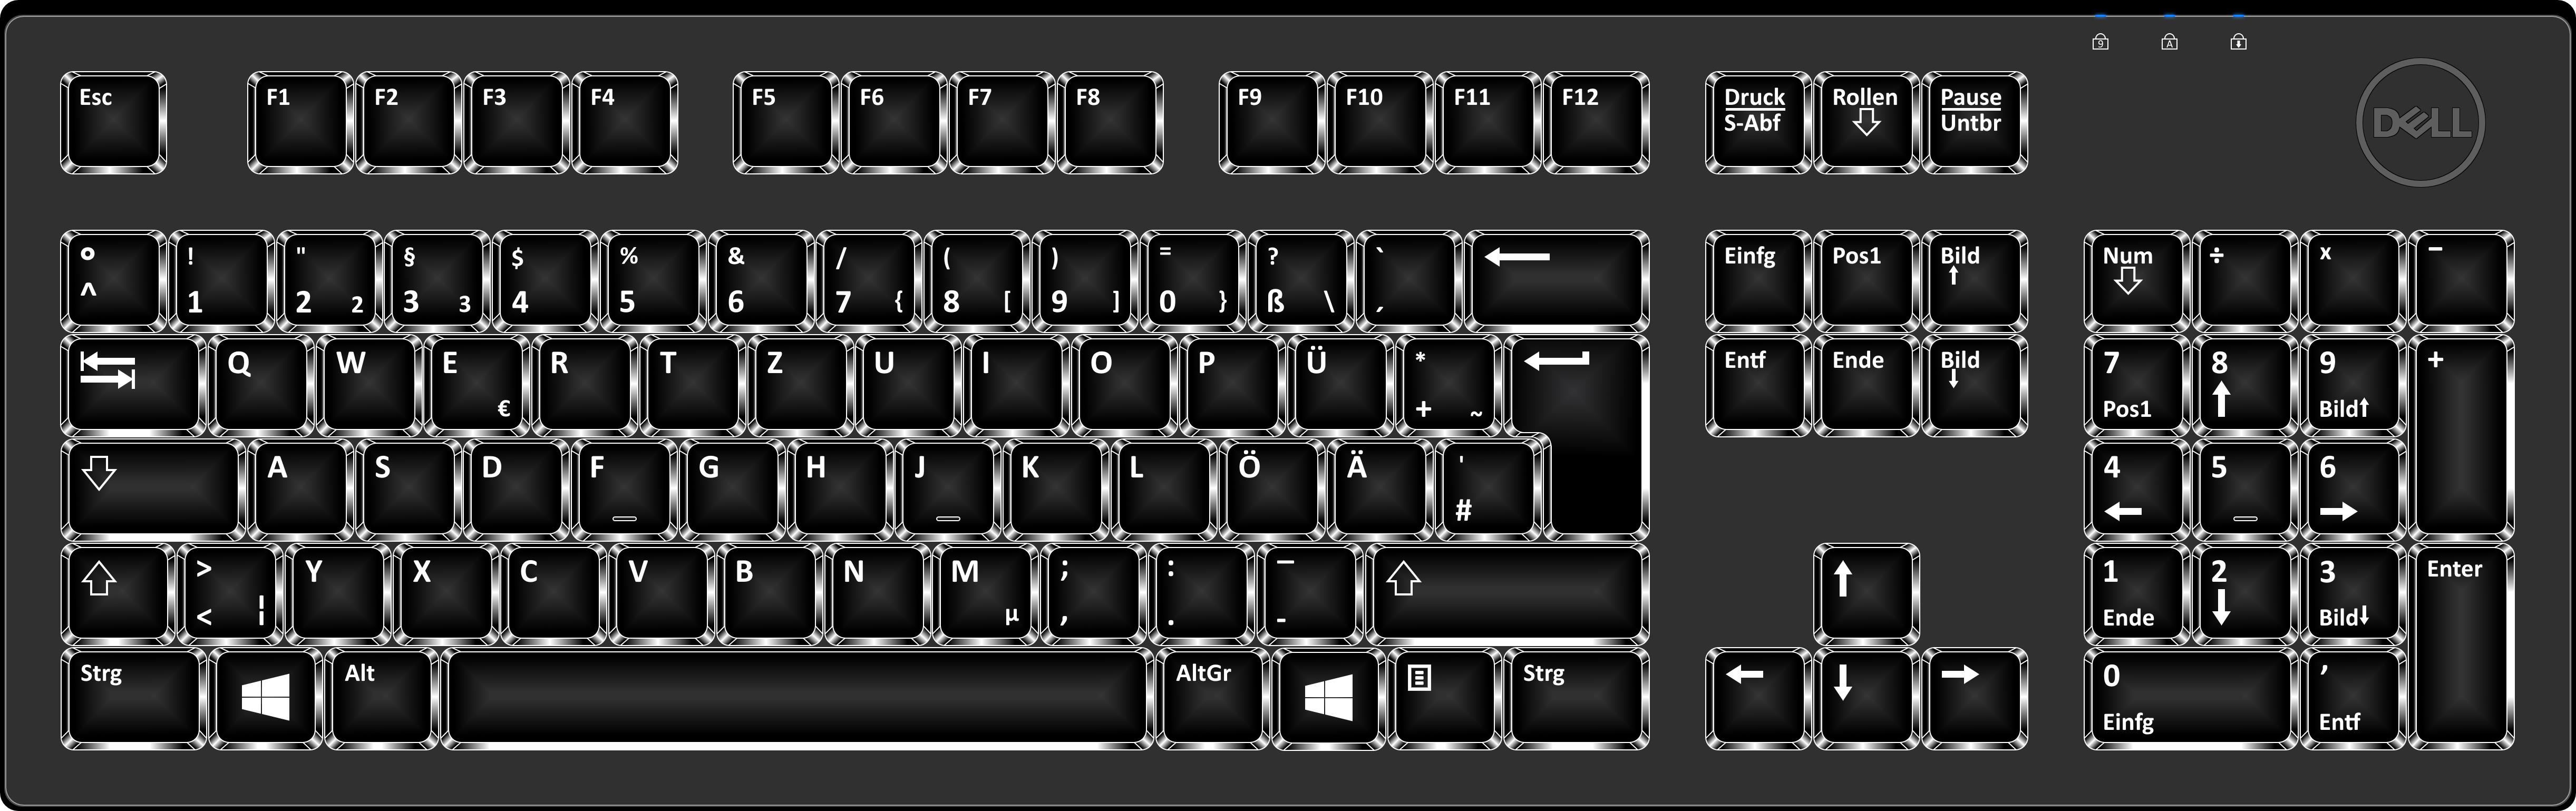 ka tamil fonts keyboard layout